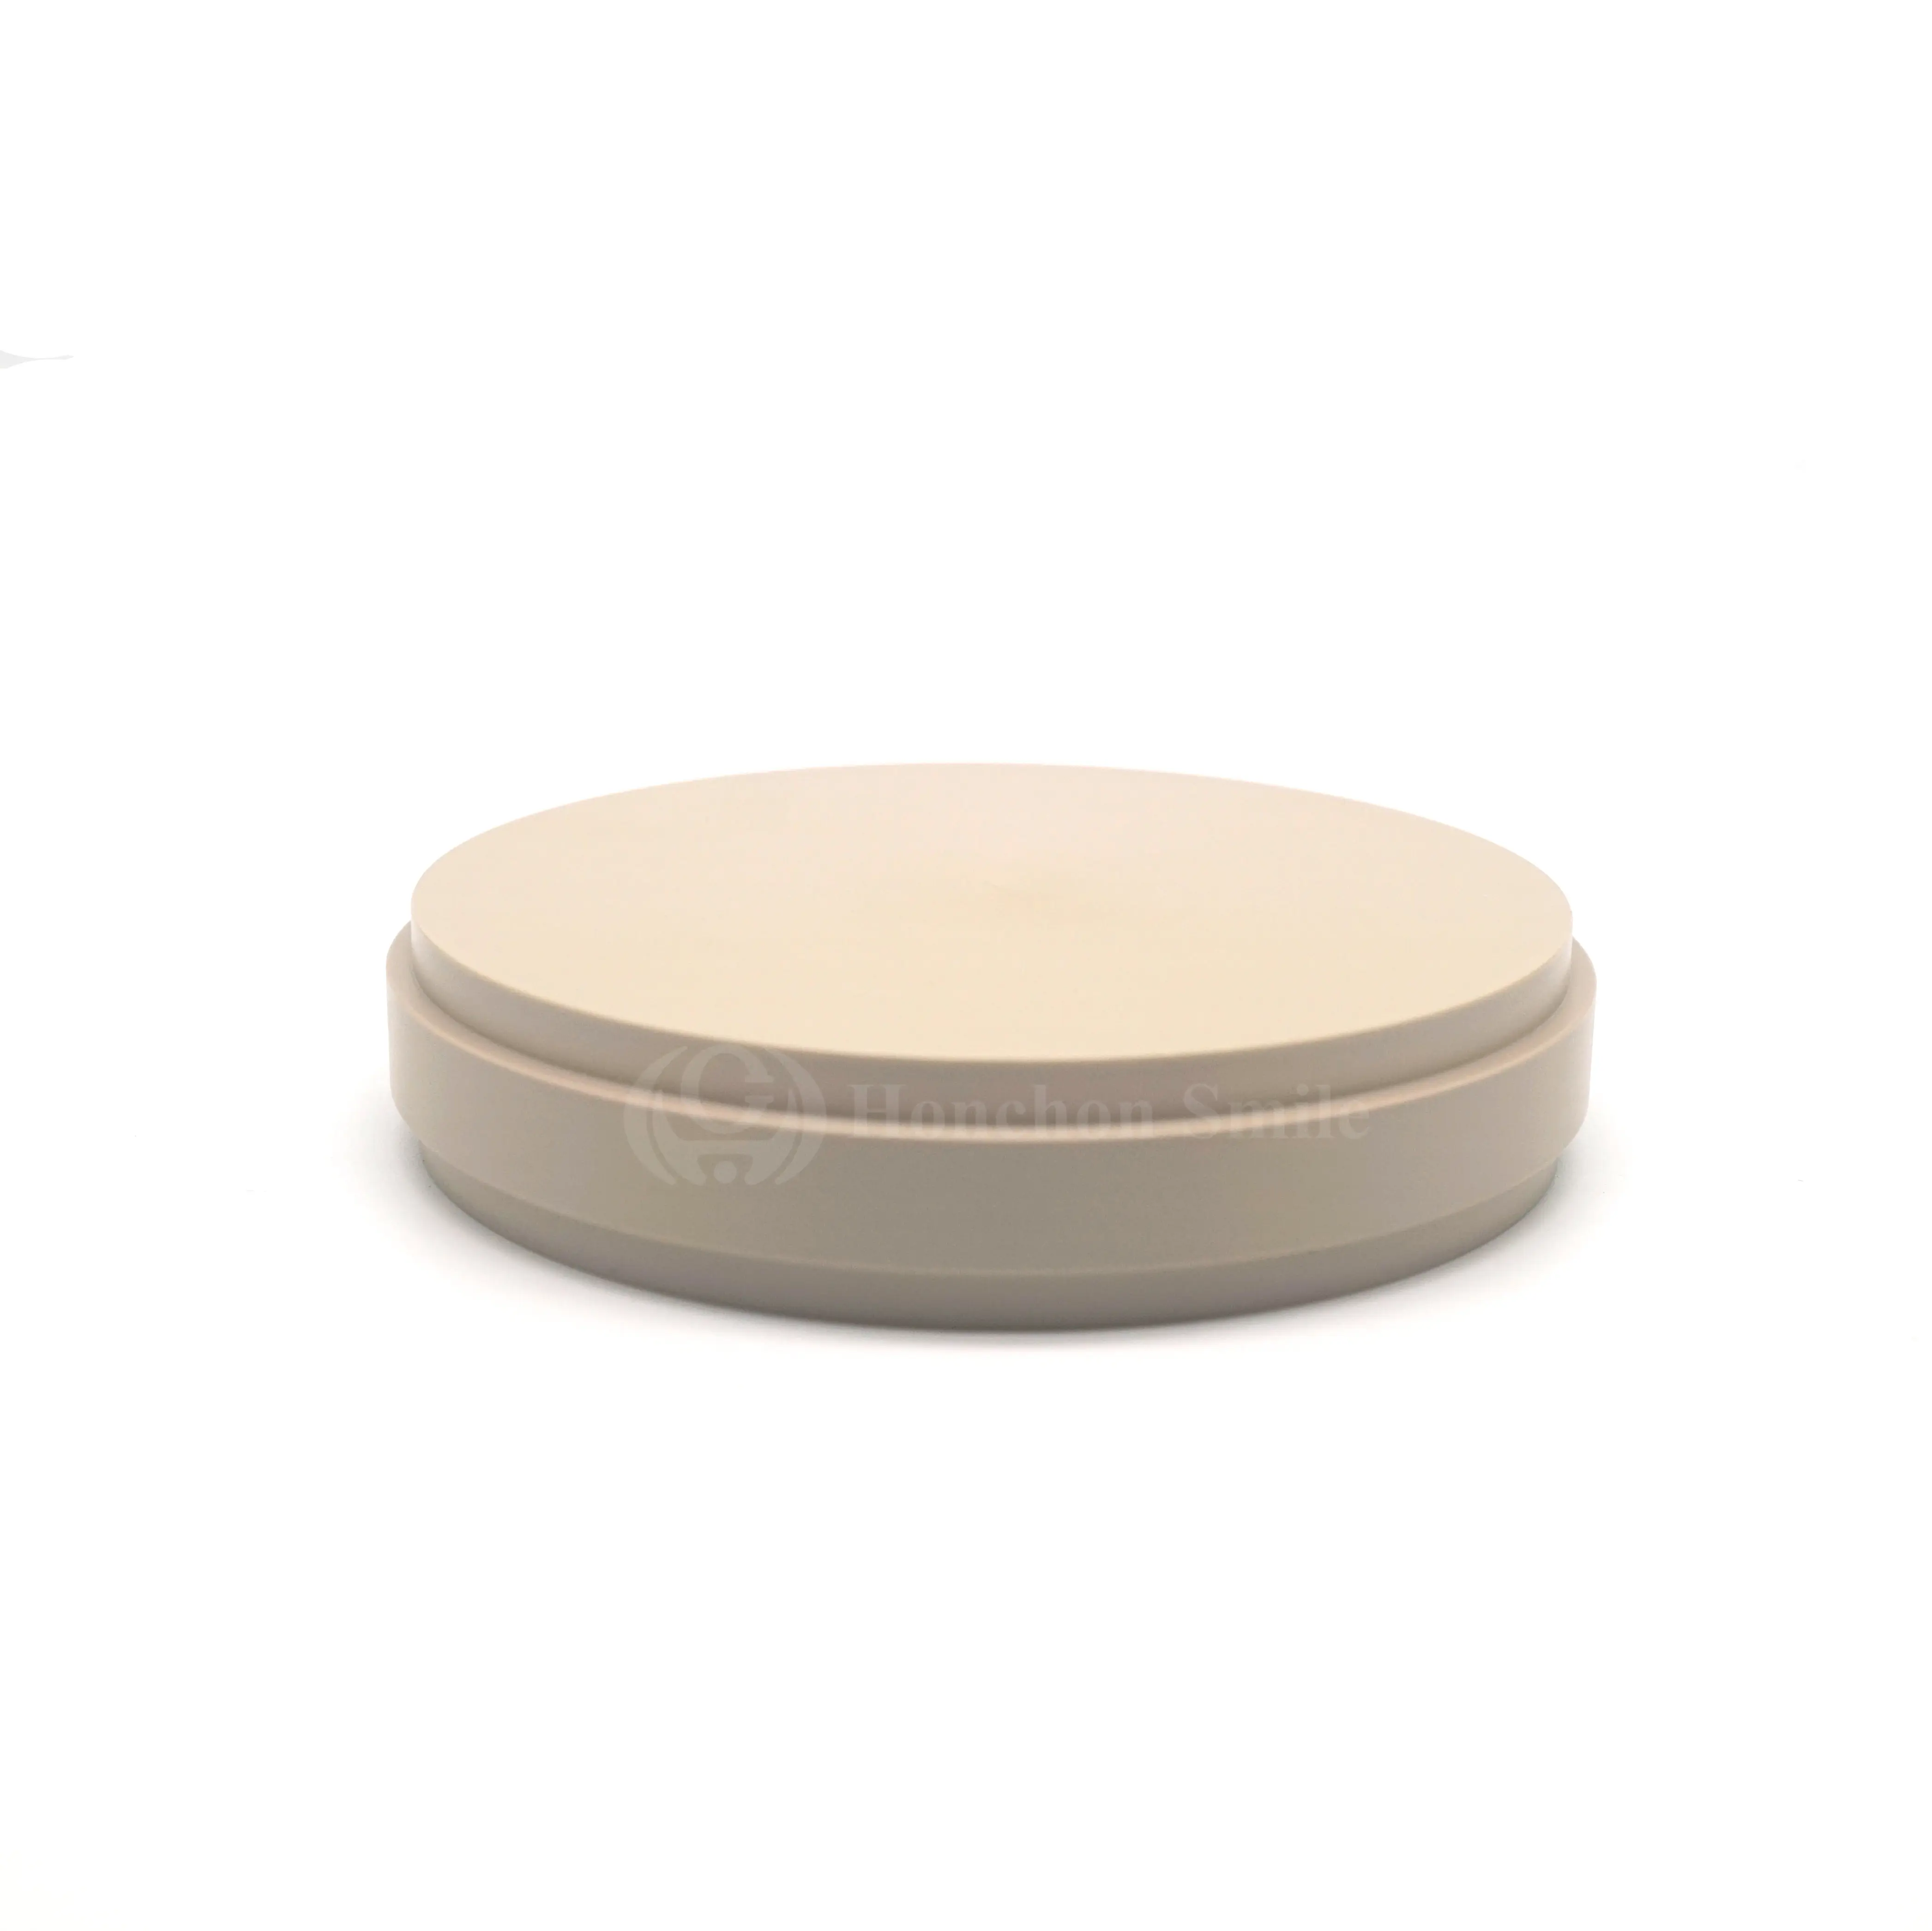 Стоматологический фрезерный диск CAD CAM PEEK Natural-новый материал для имплантов и рамок